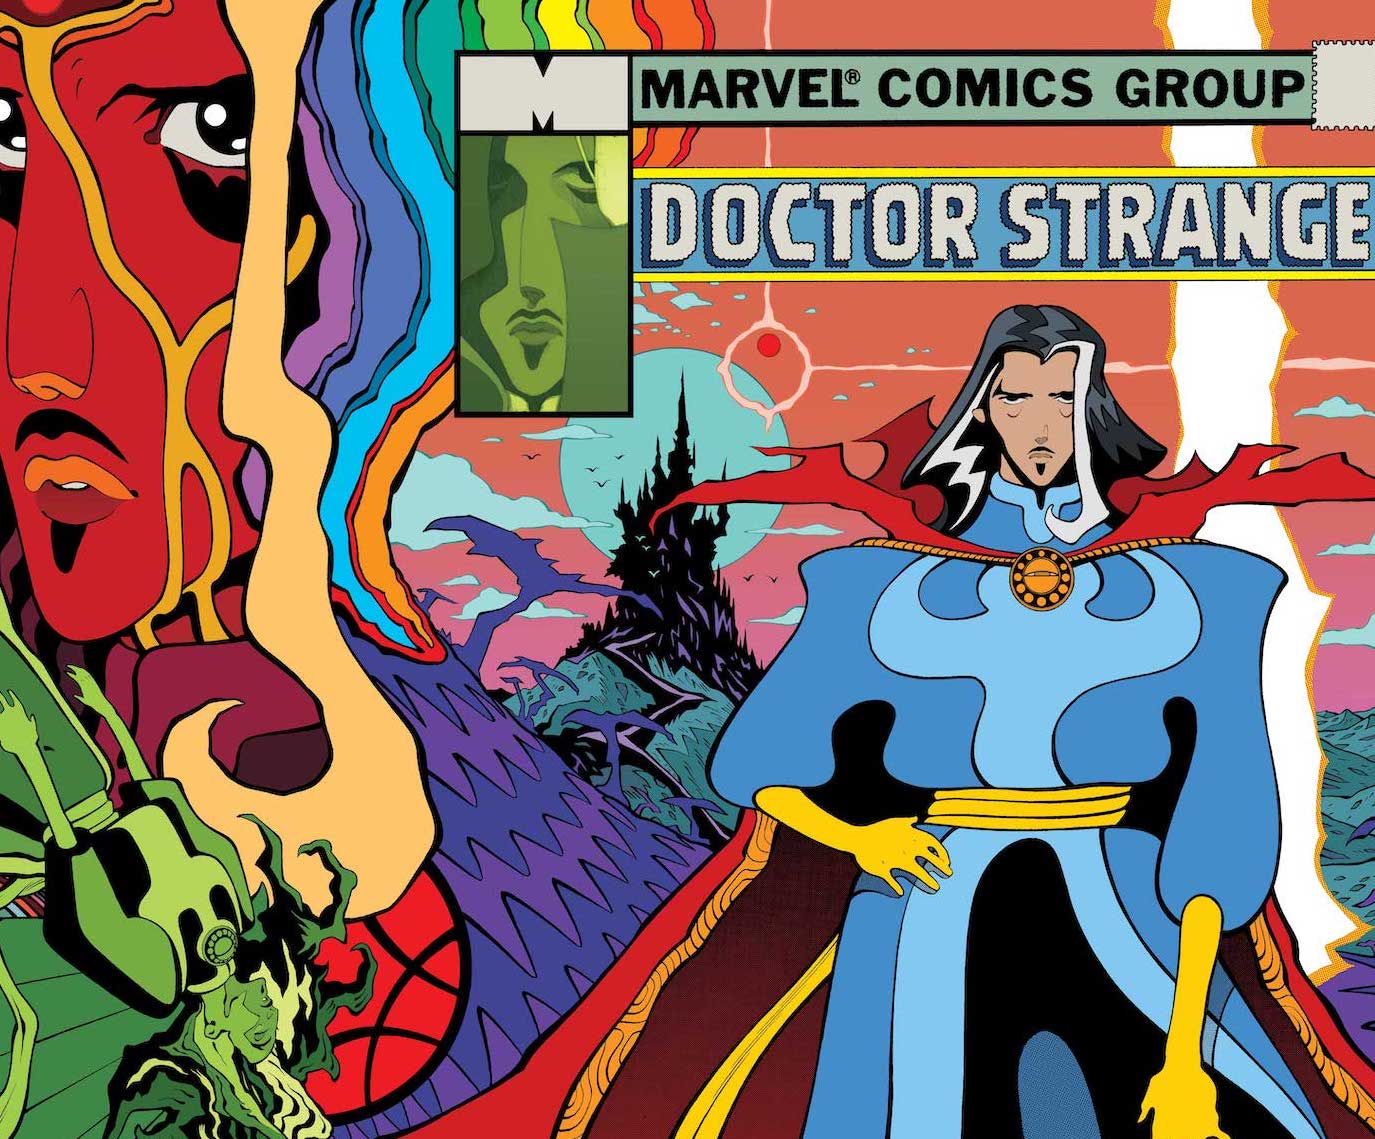 SDCC '22: Marvel announces 'Doctor Strange: Fall Sunrise' #1 for November